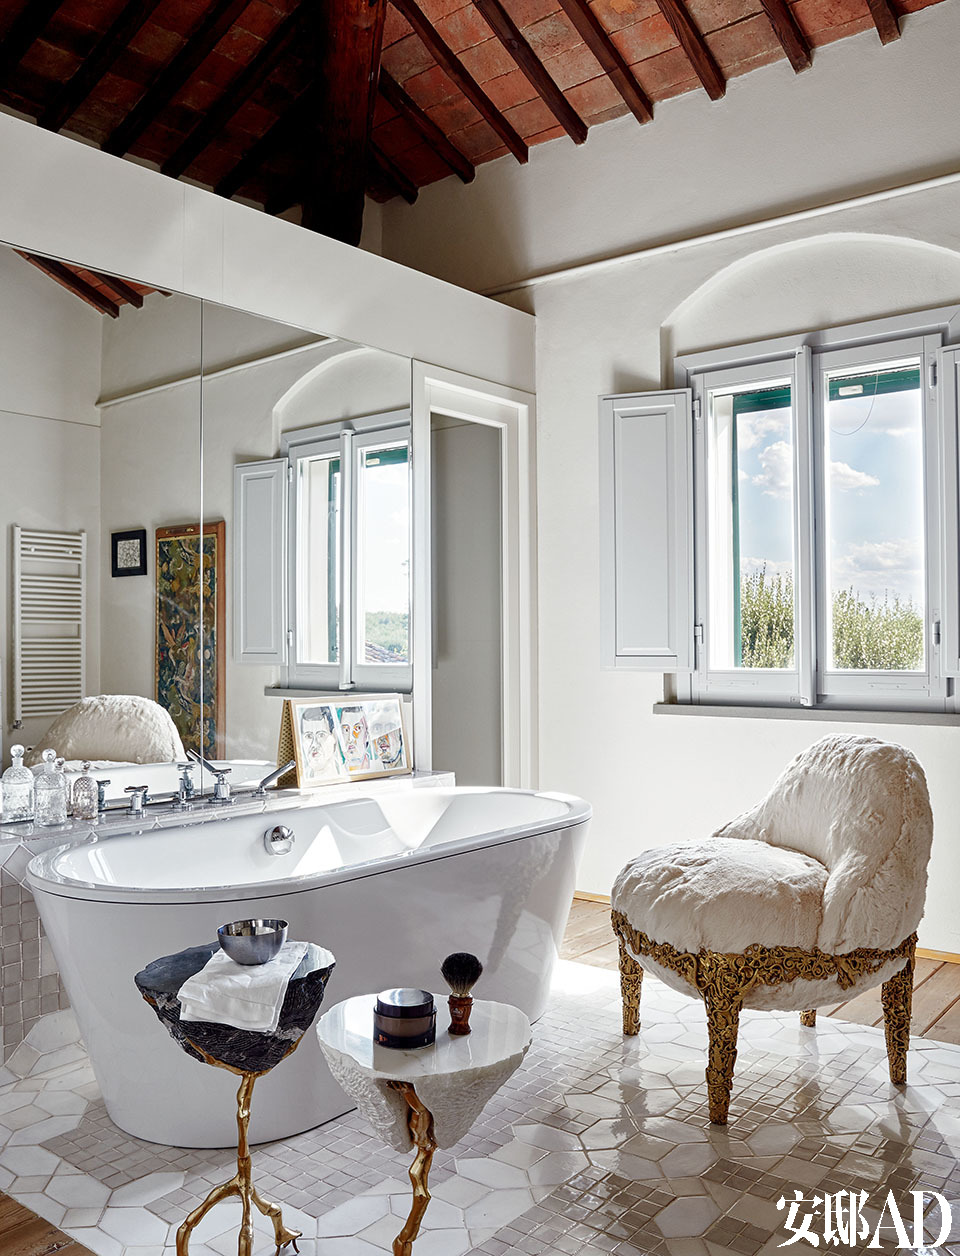 浴室里，巴洛克风格的小边几和扶手椅都是巴西设计师 Campana兄弟的作品，其实用设计总是像艺术品般独一无二。浴室里巴洛克形状的小边桌与“Roccocò”扶手椅形成对比，边桌和扶手椅都是Campana兄弟2012年的设计作品。